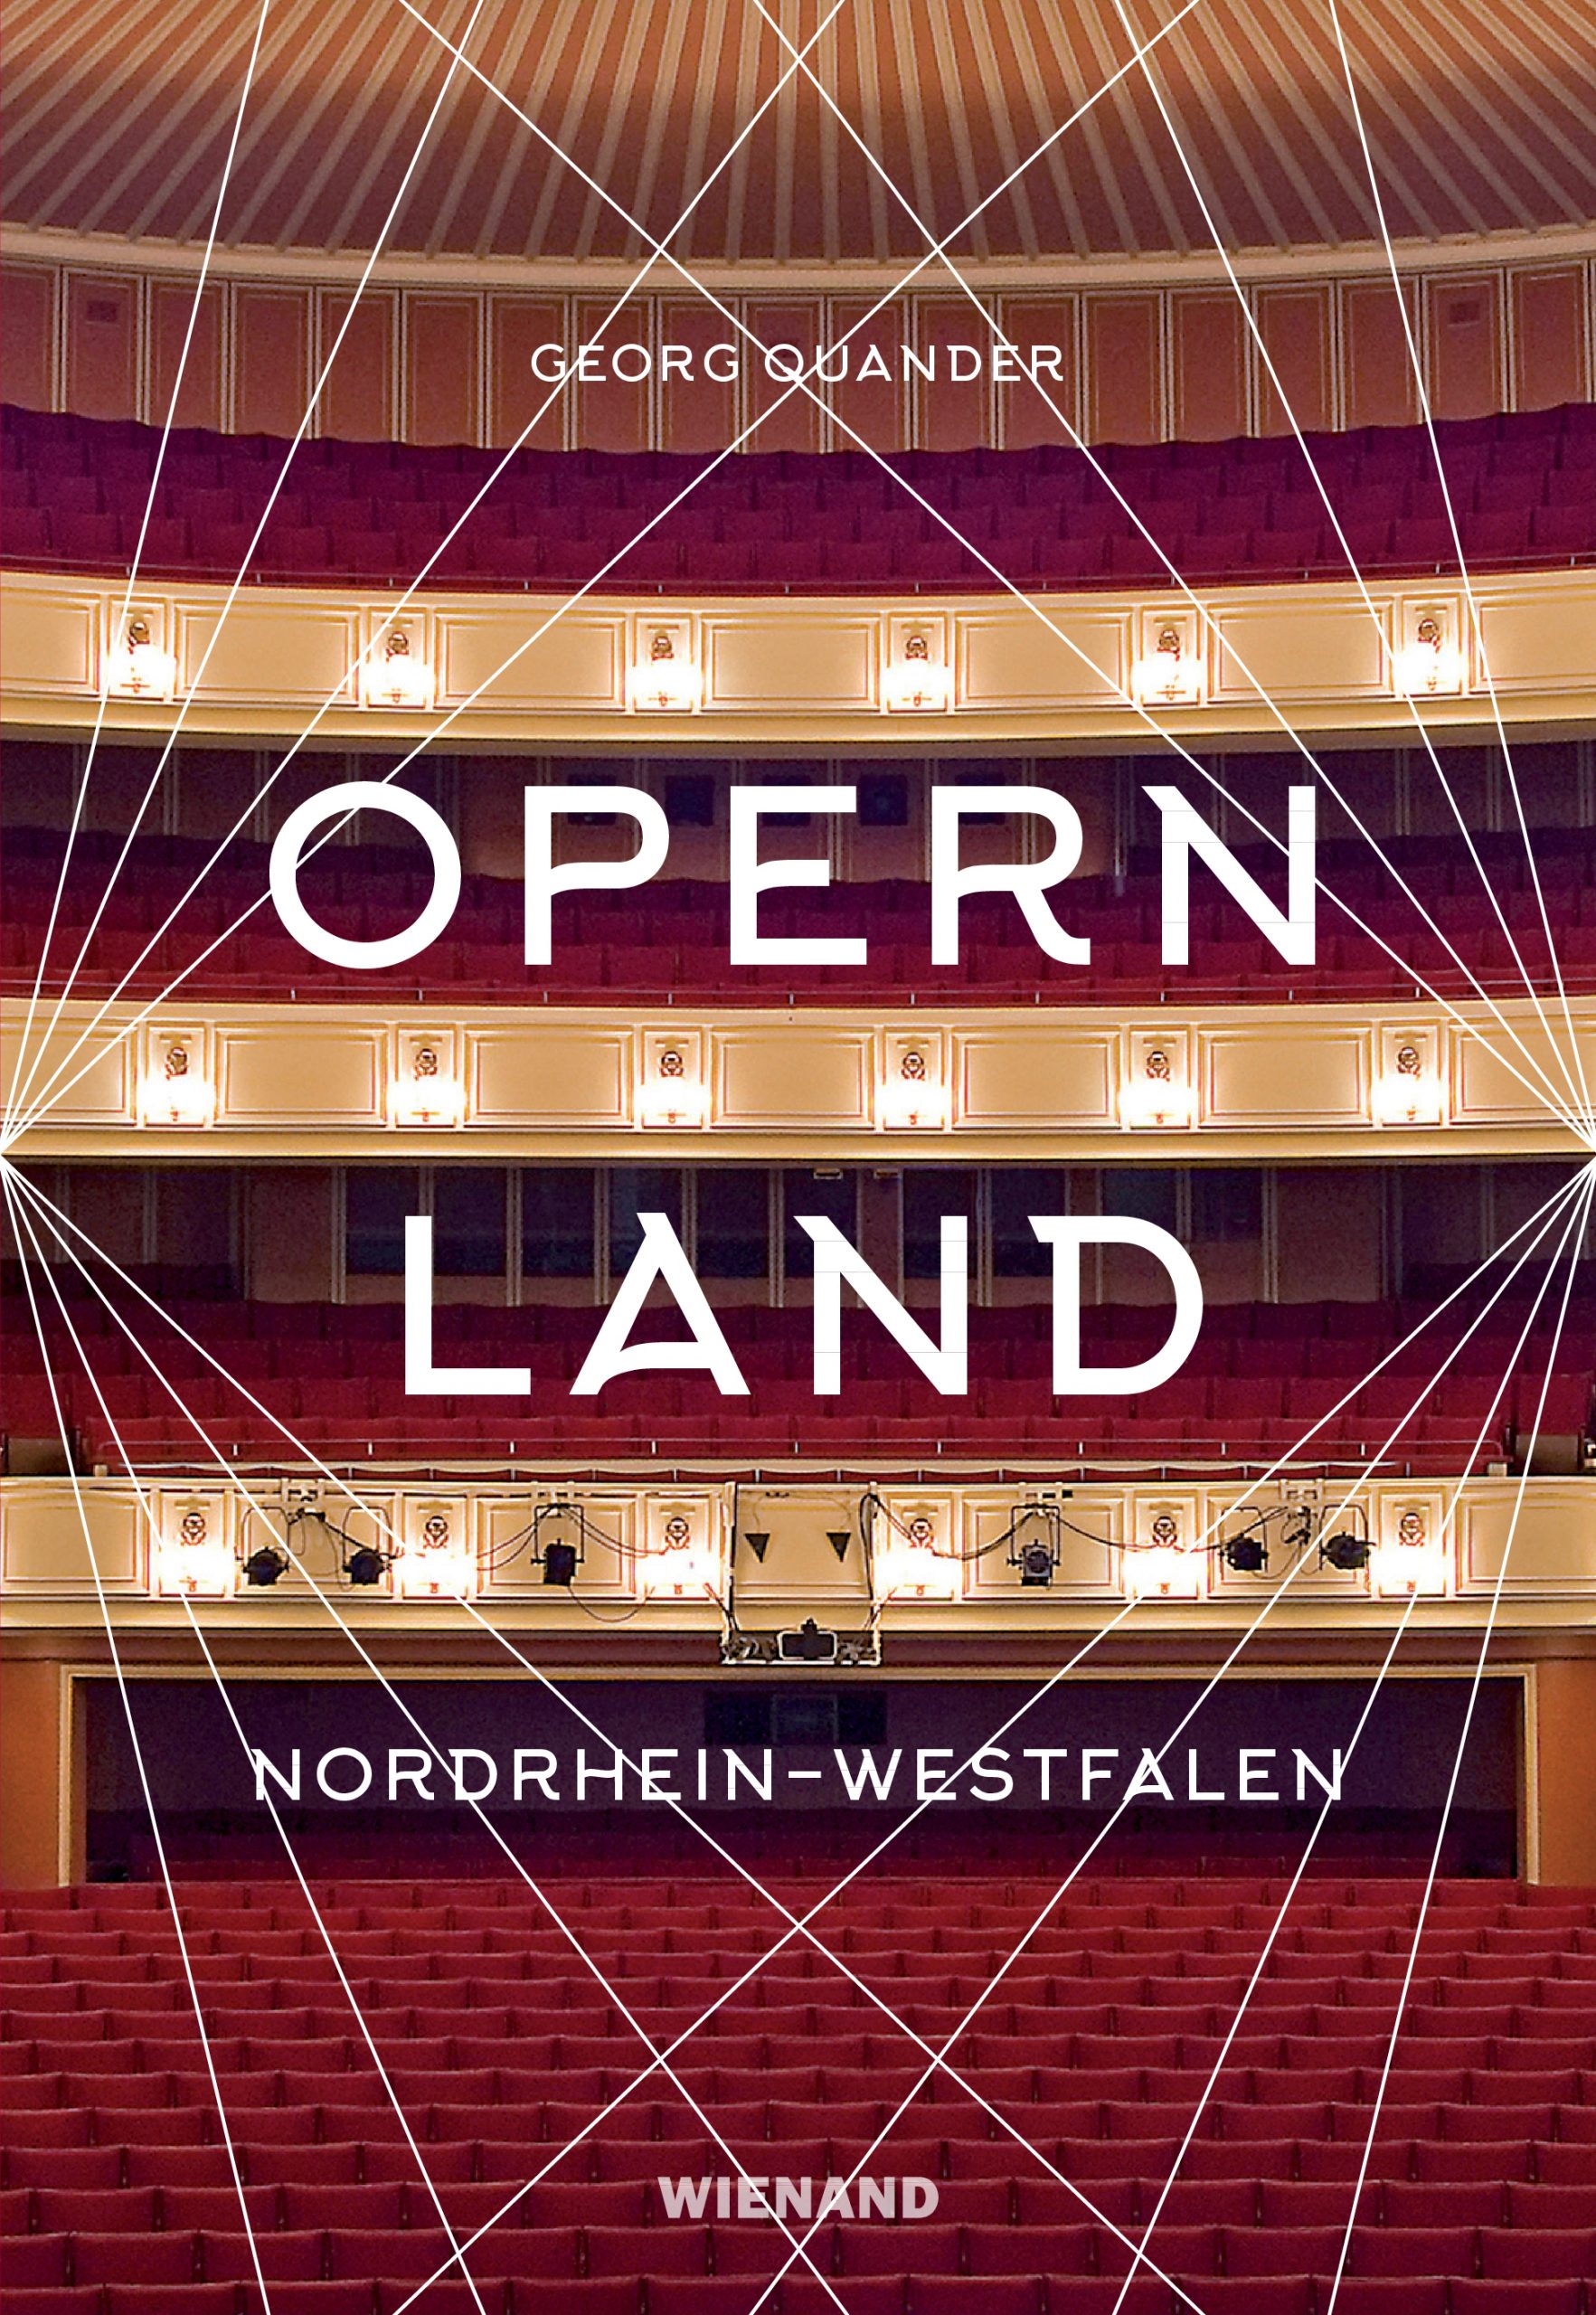 Opernland Nordrhein-Westfalen